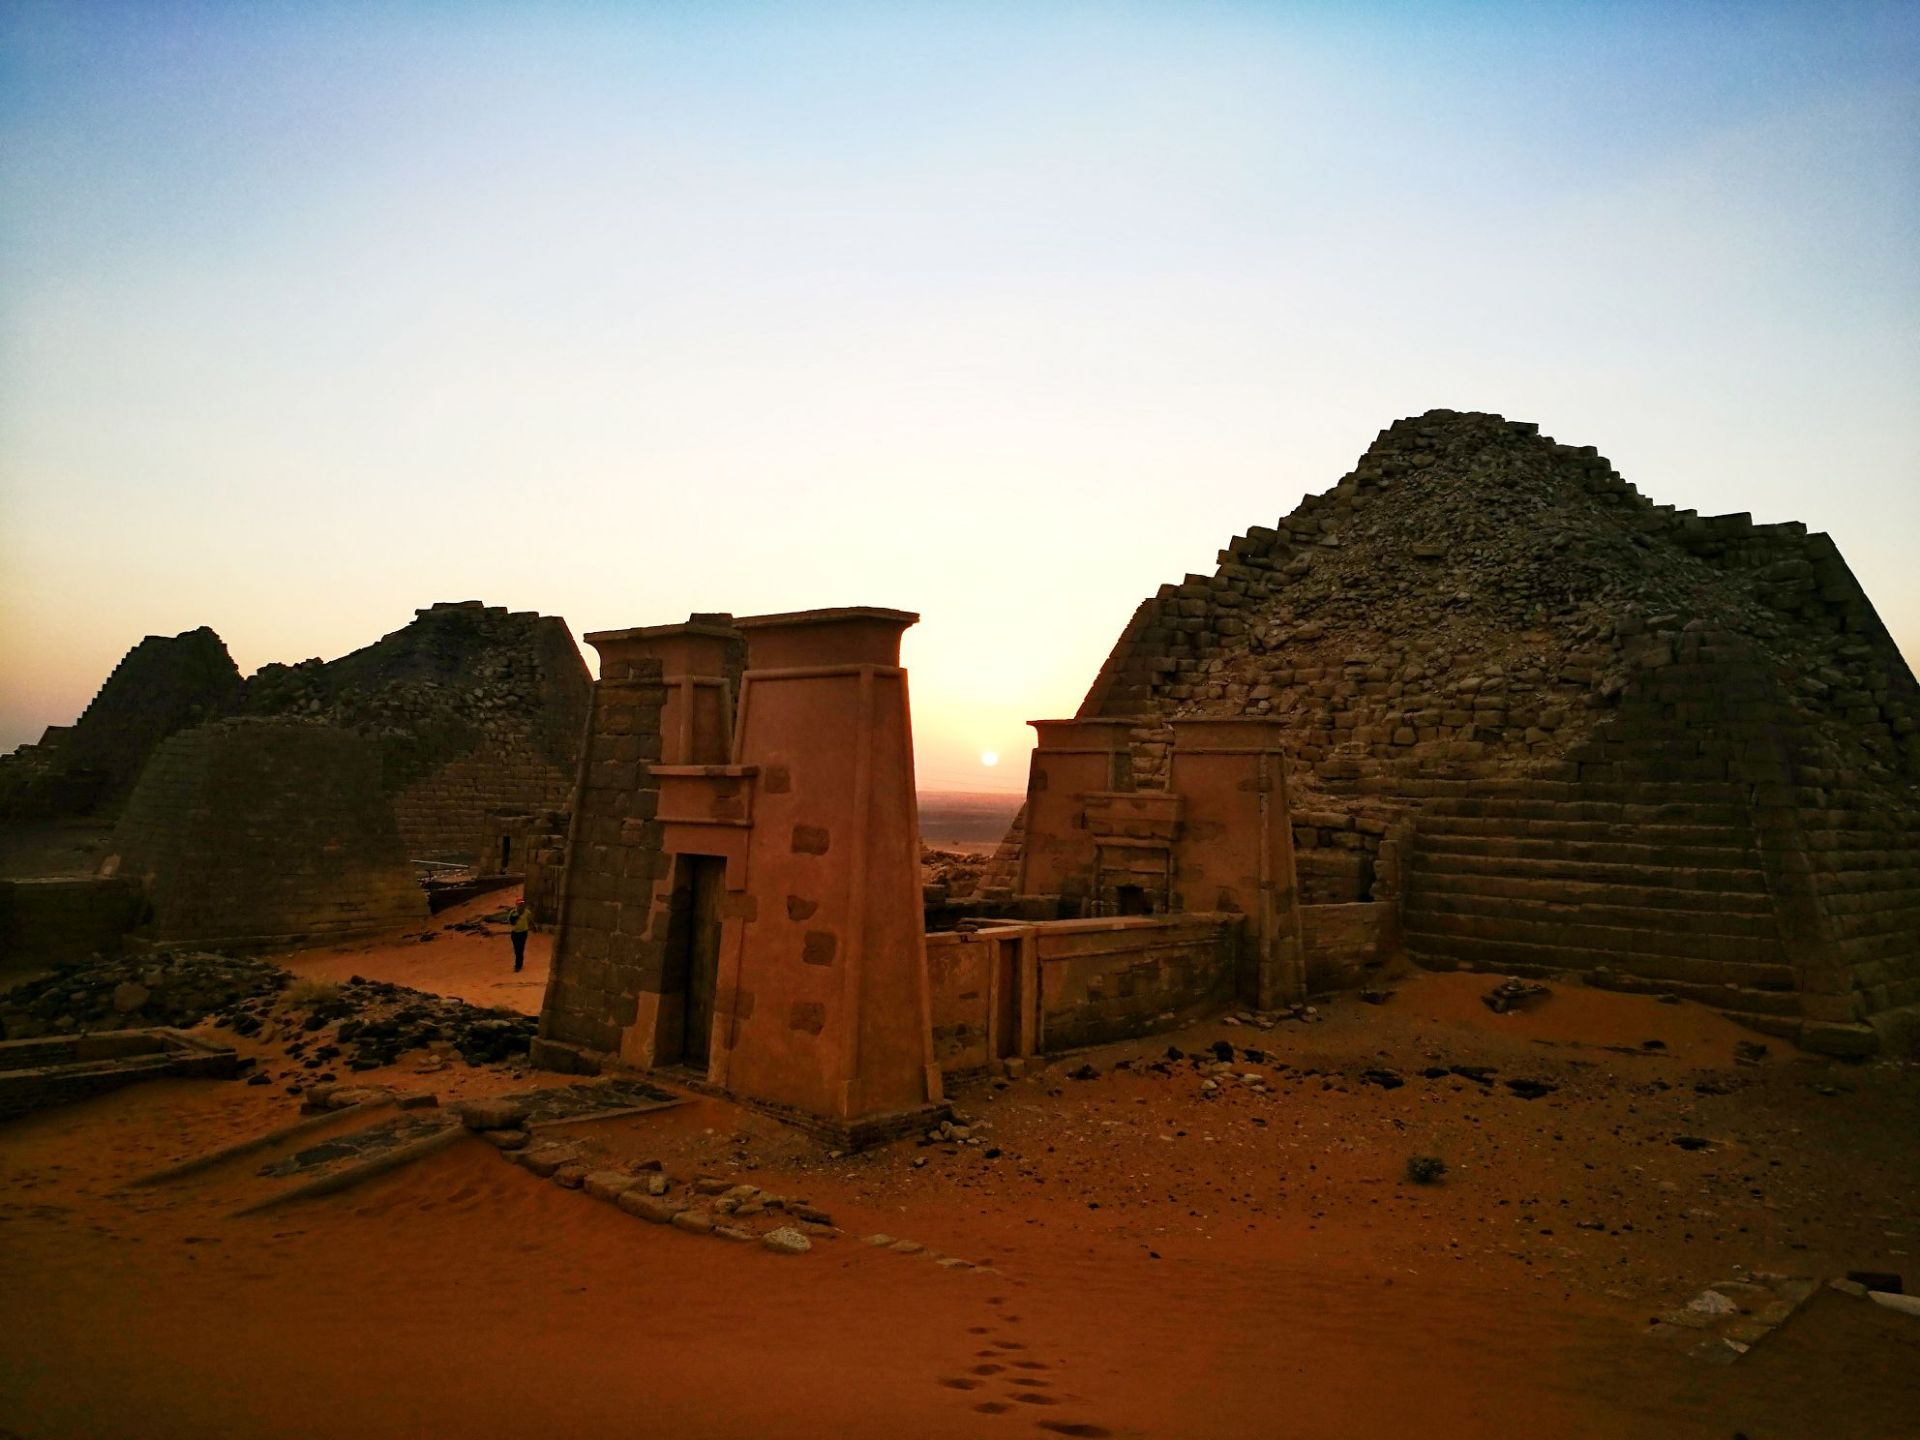 麦罗埃金字塔(2011年世界文化遗产)，苏丹历史上著名的麦罗埃王朝的陵墓群，也被称为“小金字塔”。